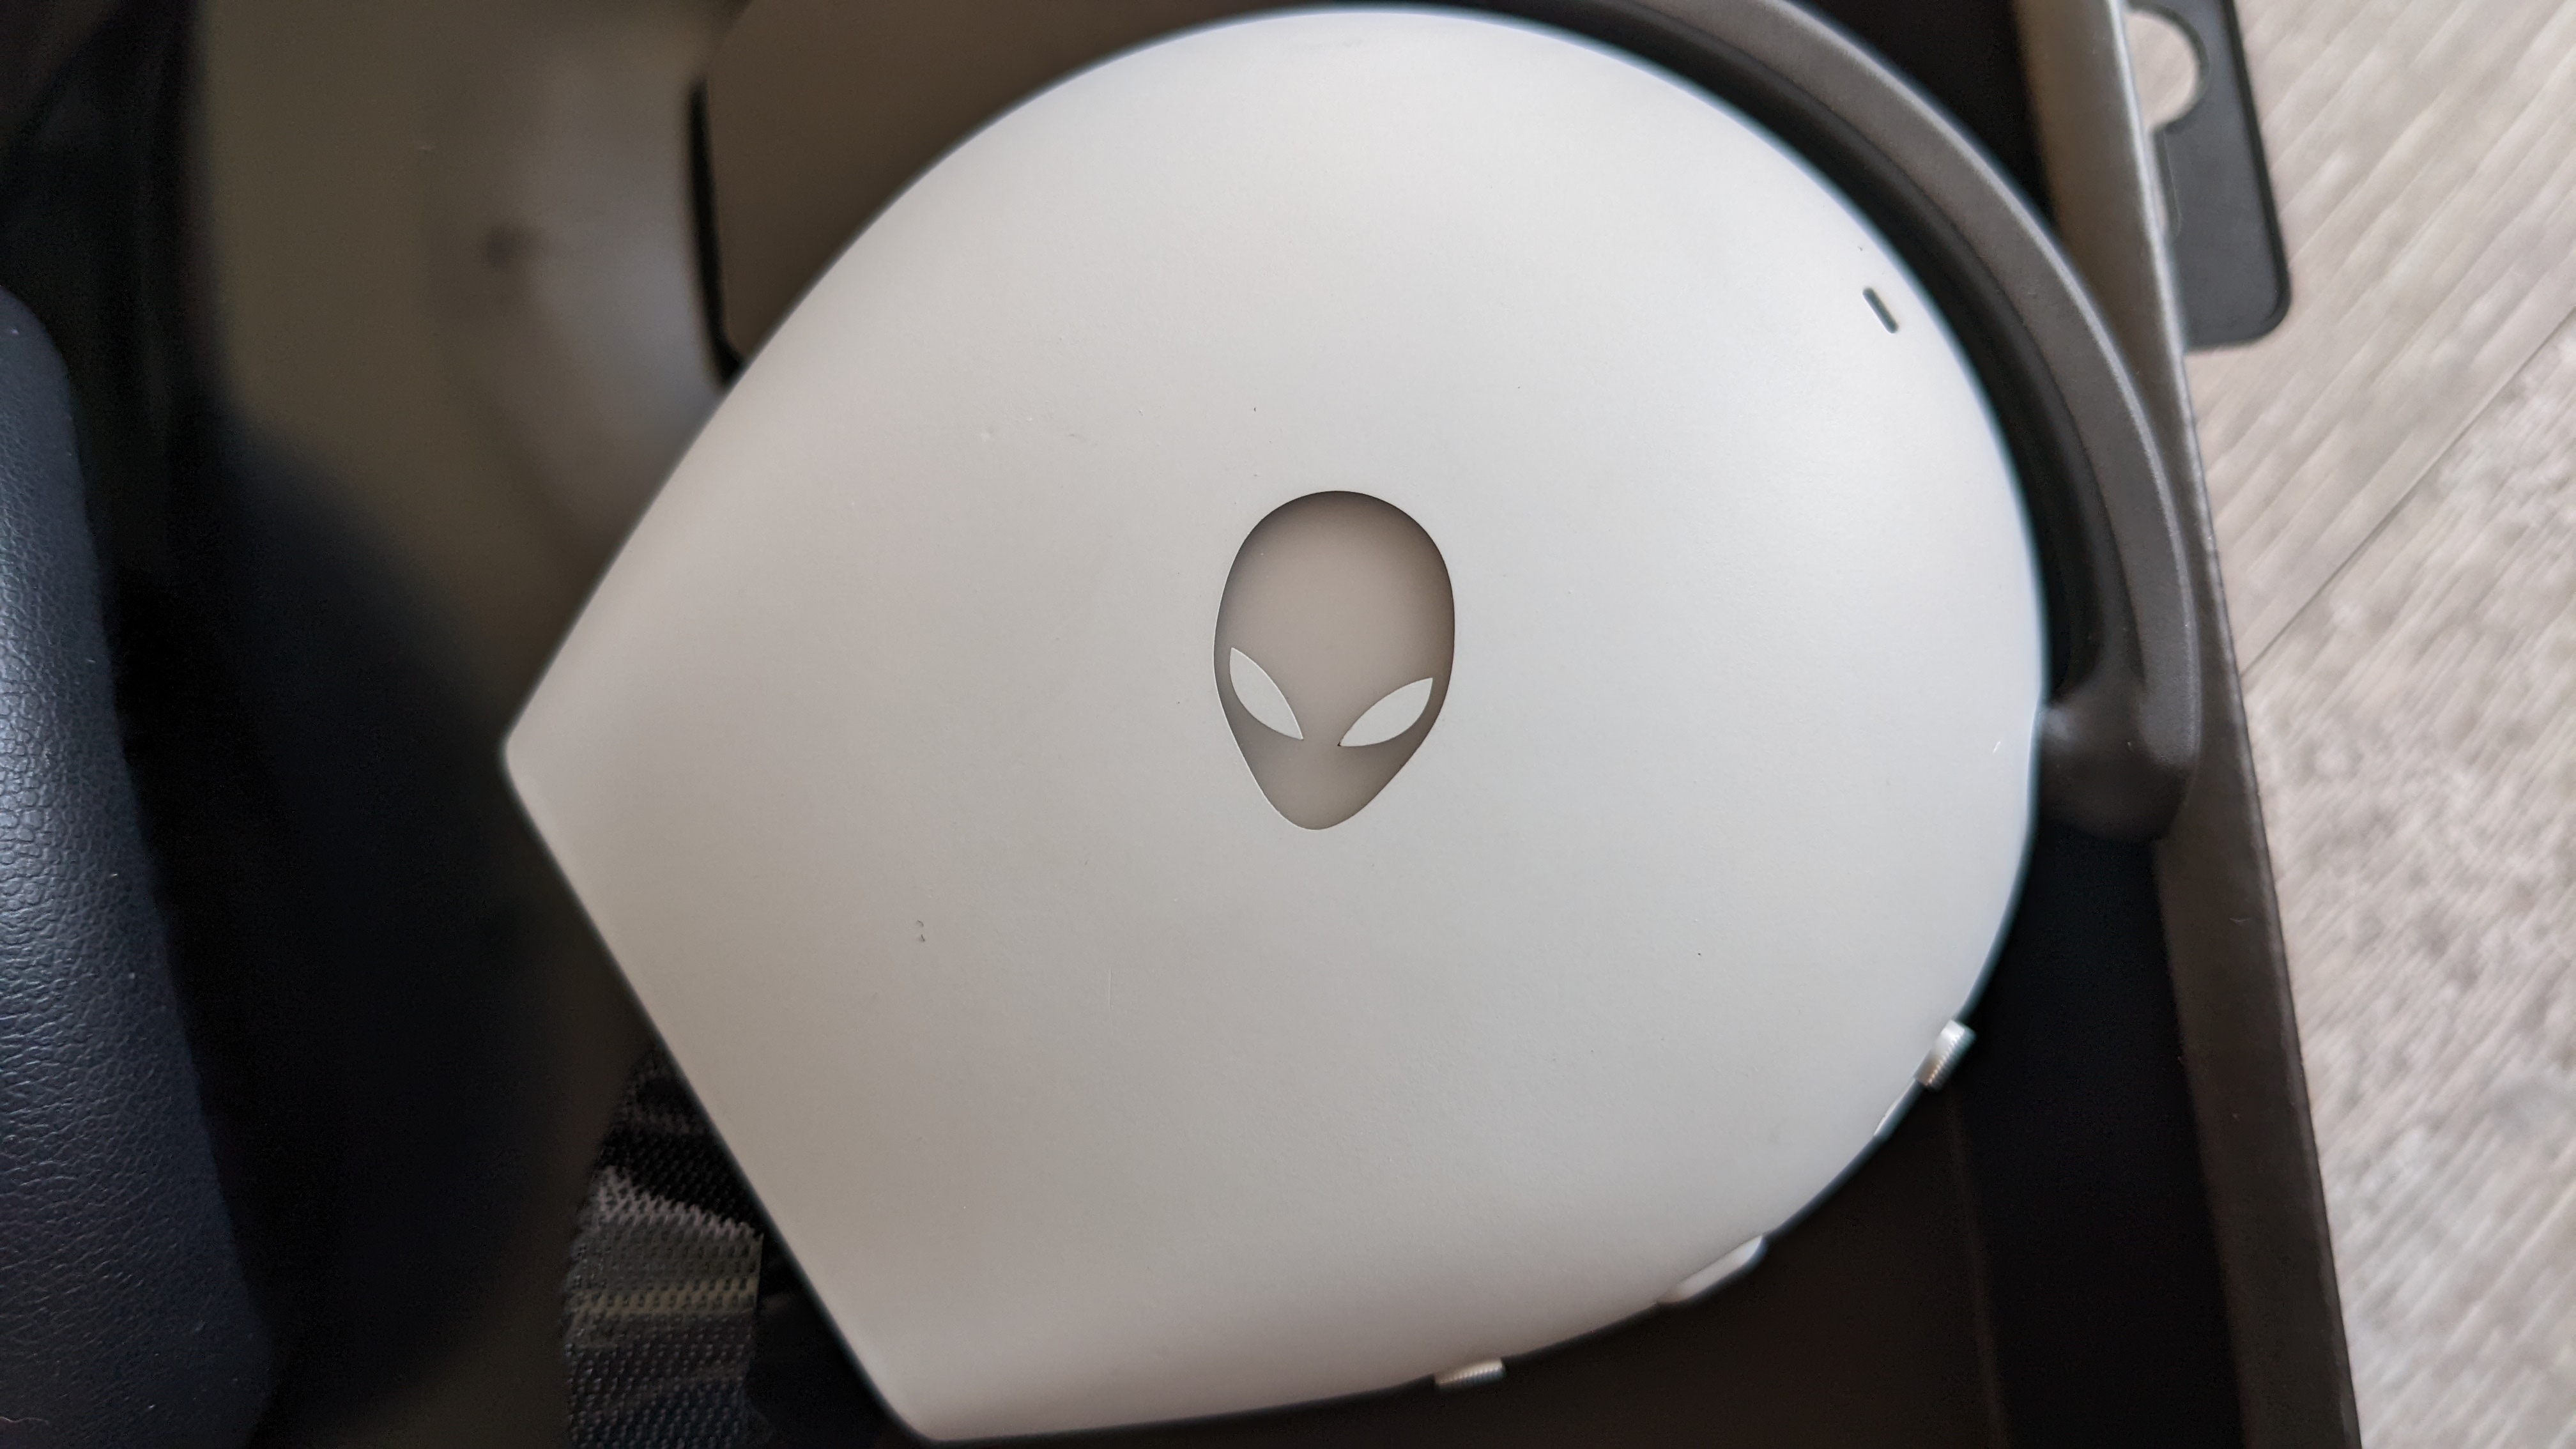 Kulaklığın kulaklık kısmında Alienware 920H logosu